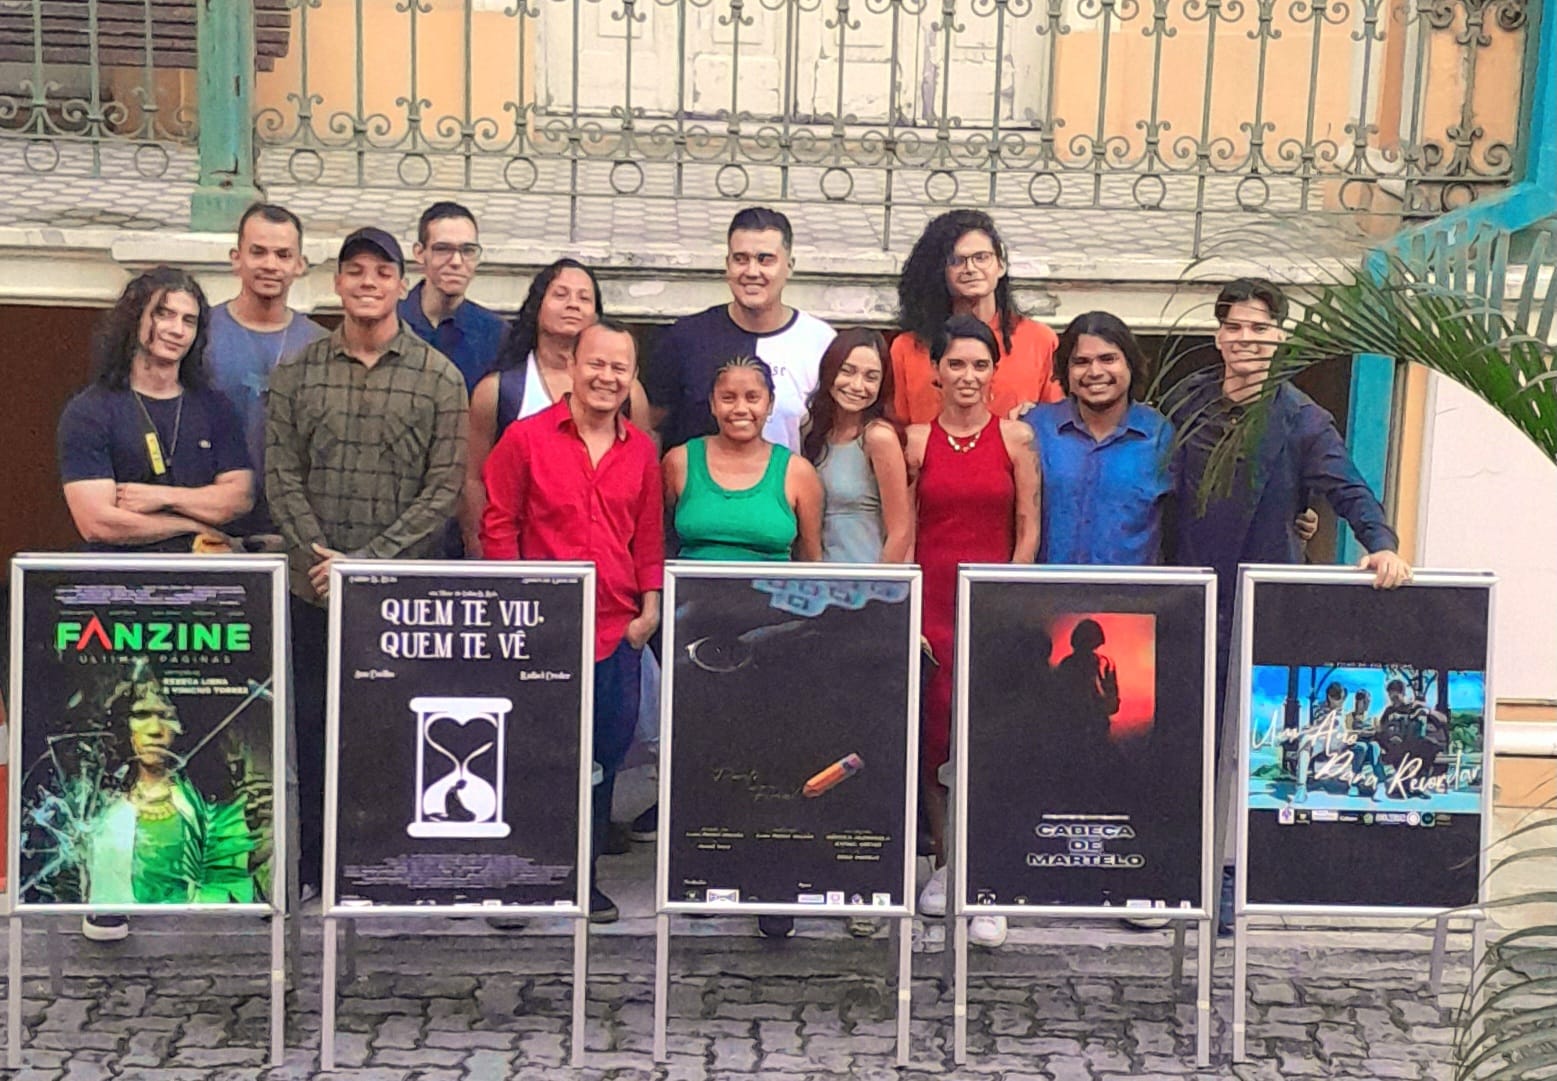 Mostra de Jovens Cineastas ganha nova exibição no Cineteatro Guarany em Manaus